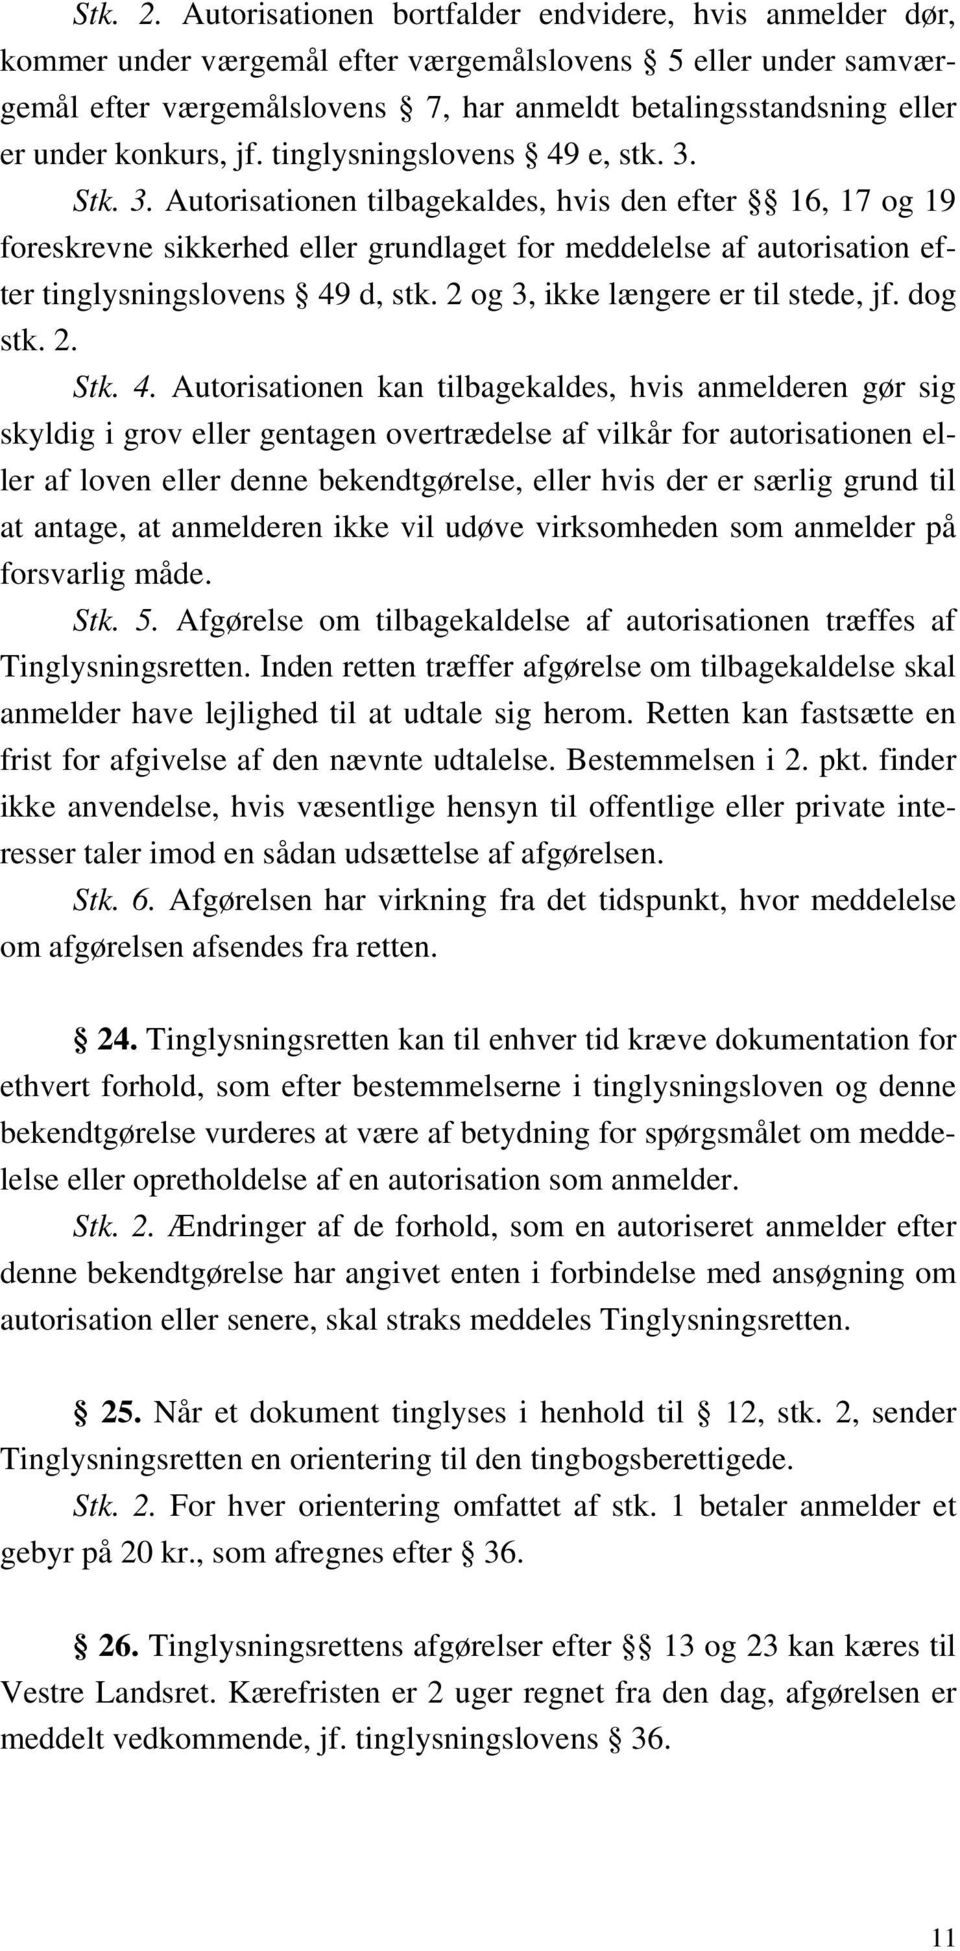 konkurs, jf. tinglysningslovens 49 e, stk. 3.